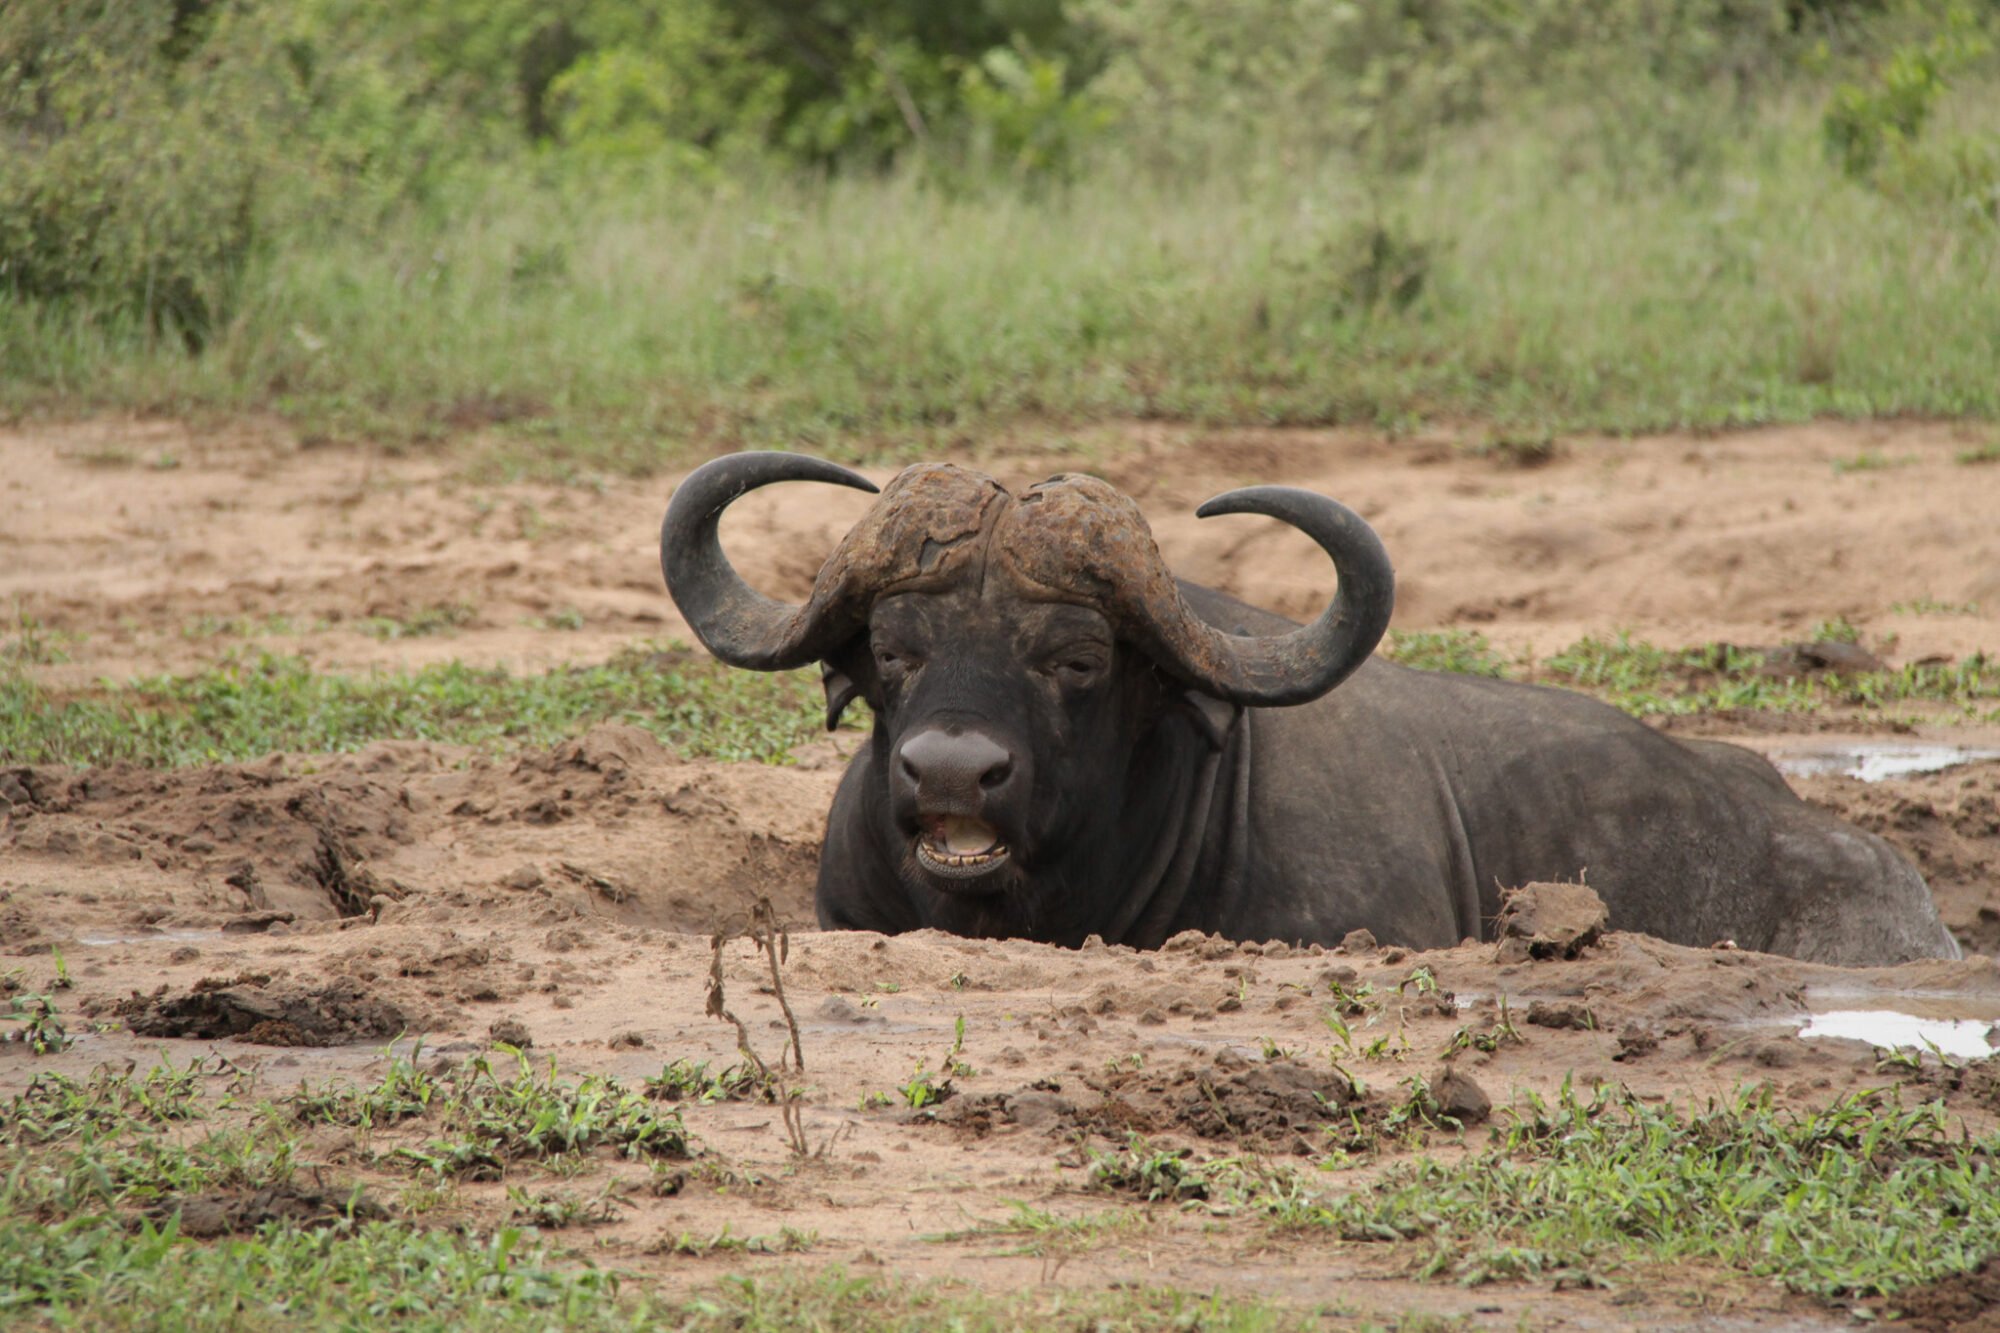 Kapama buffalo wallowing